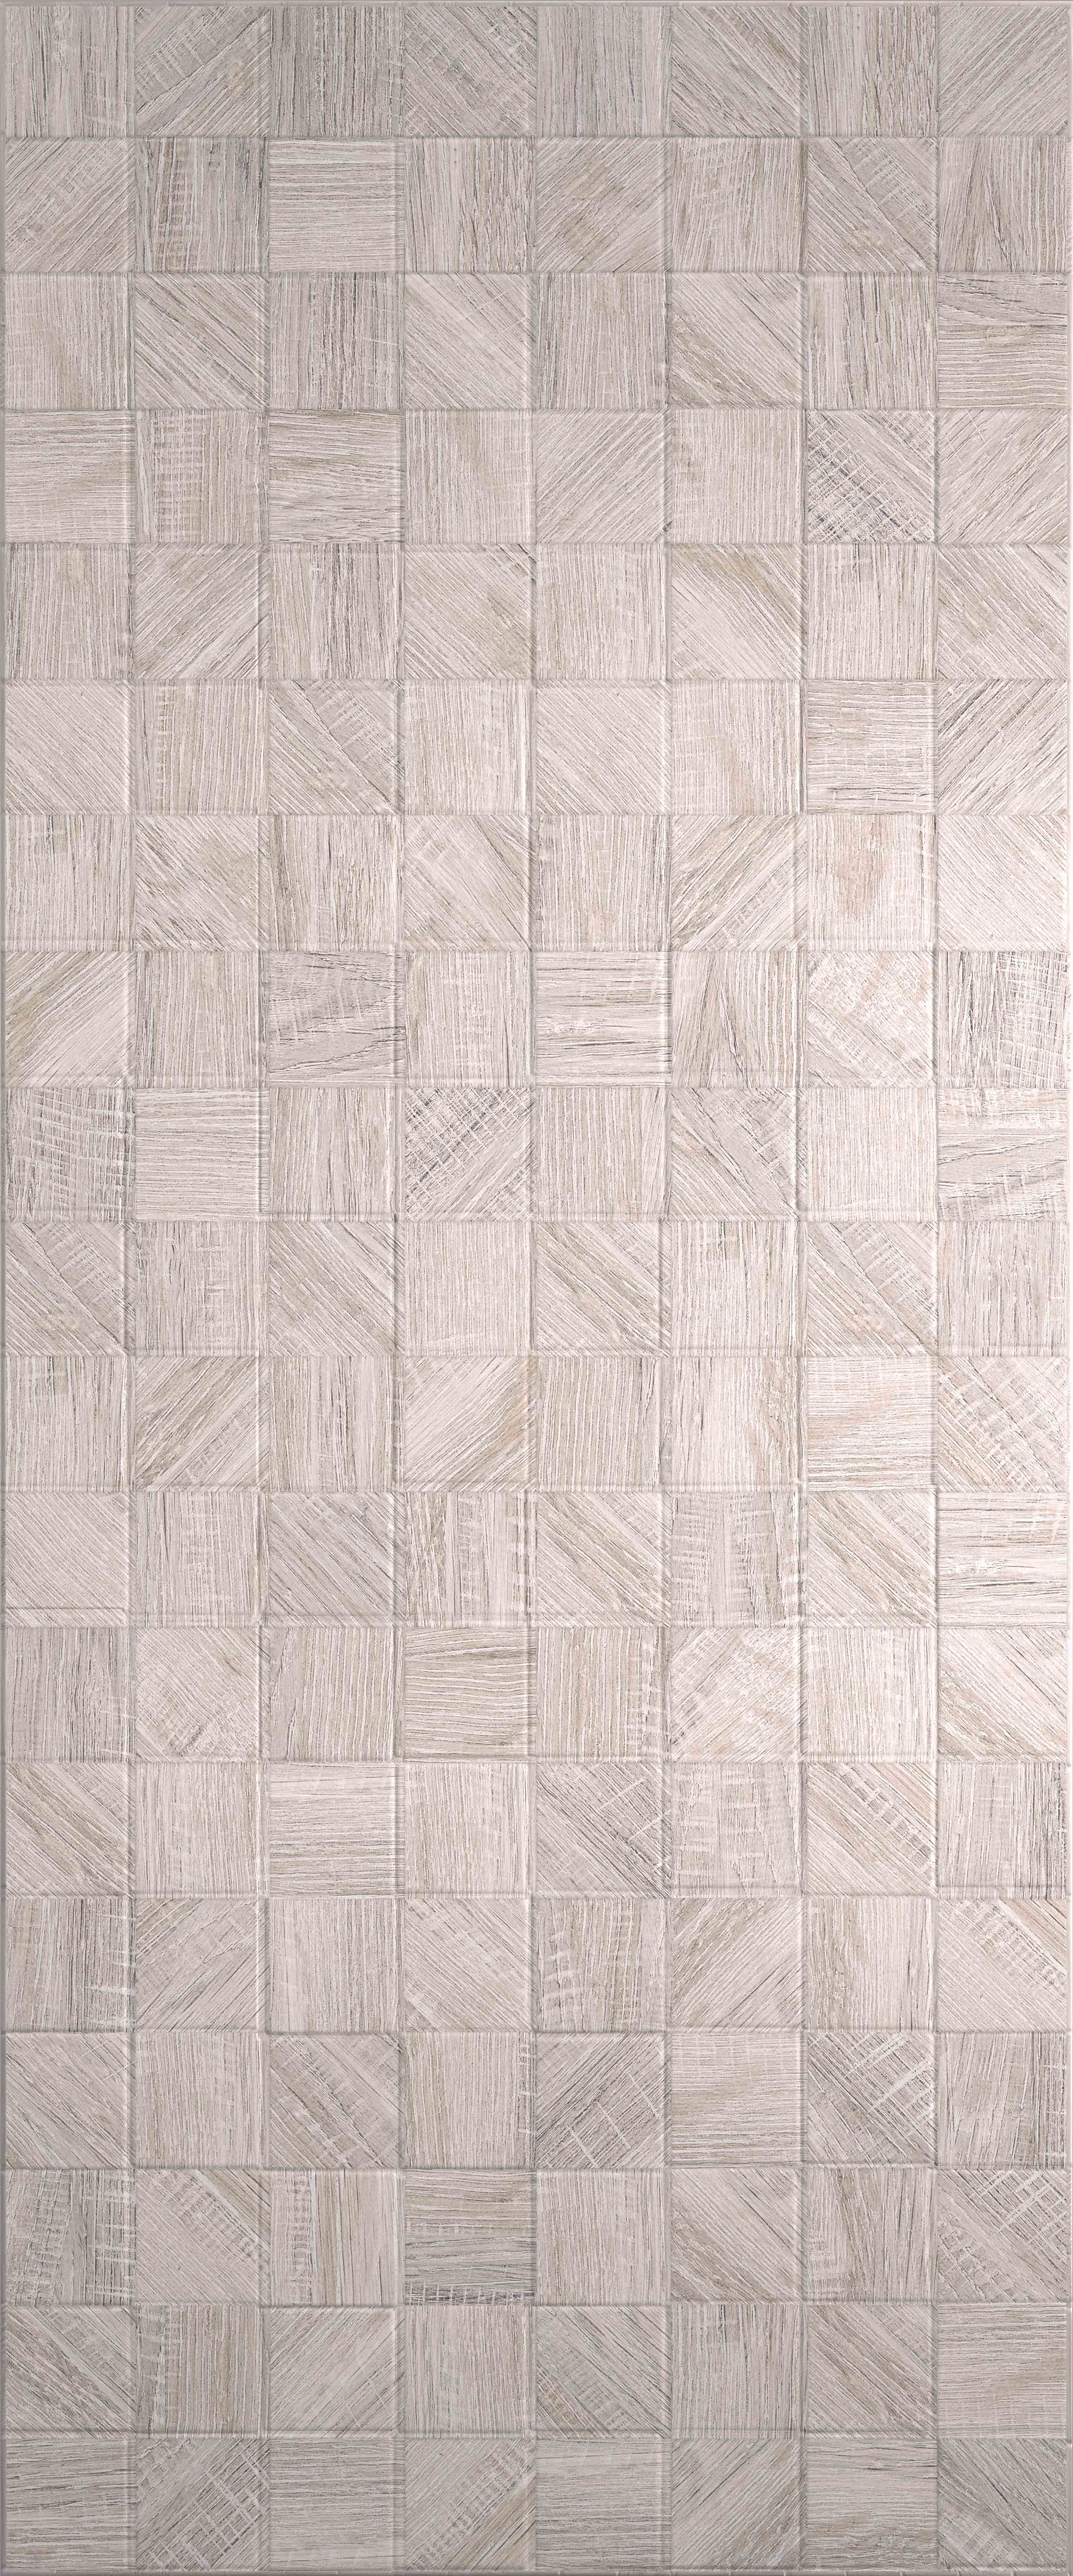 плитка effetto wood grey dark 02 25х60 Плитка Effetto Wood Mosaico Grey 03 25х60